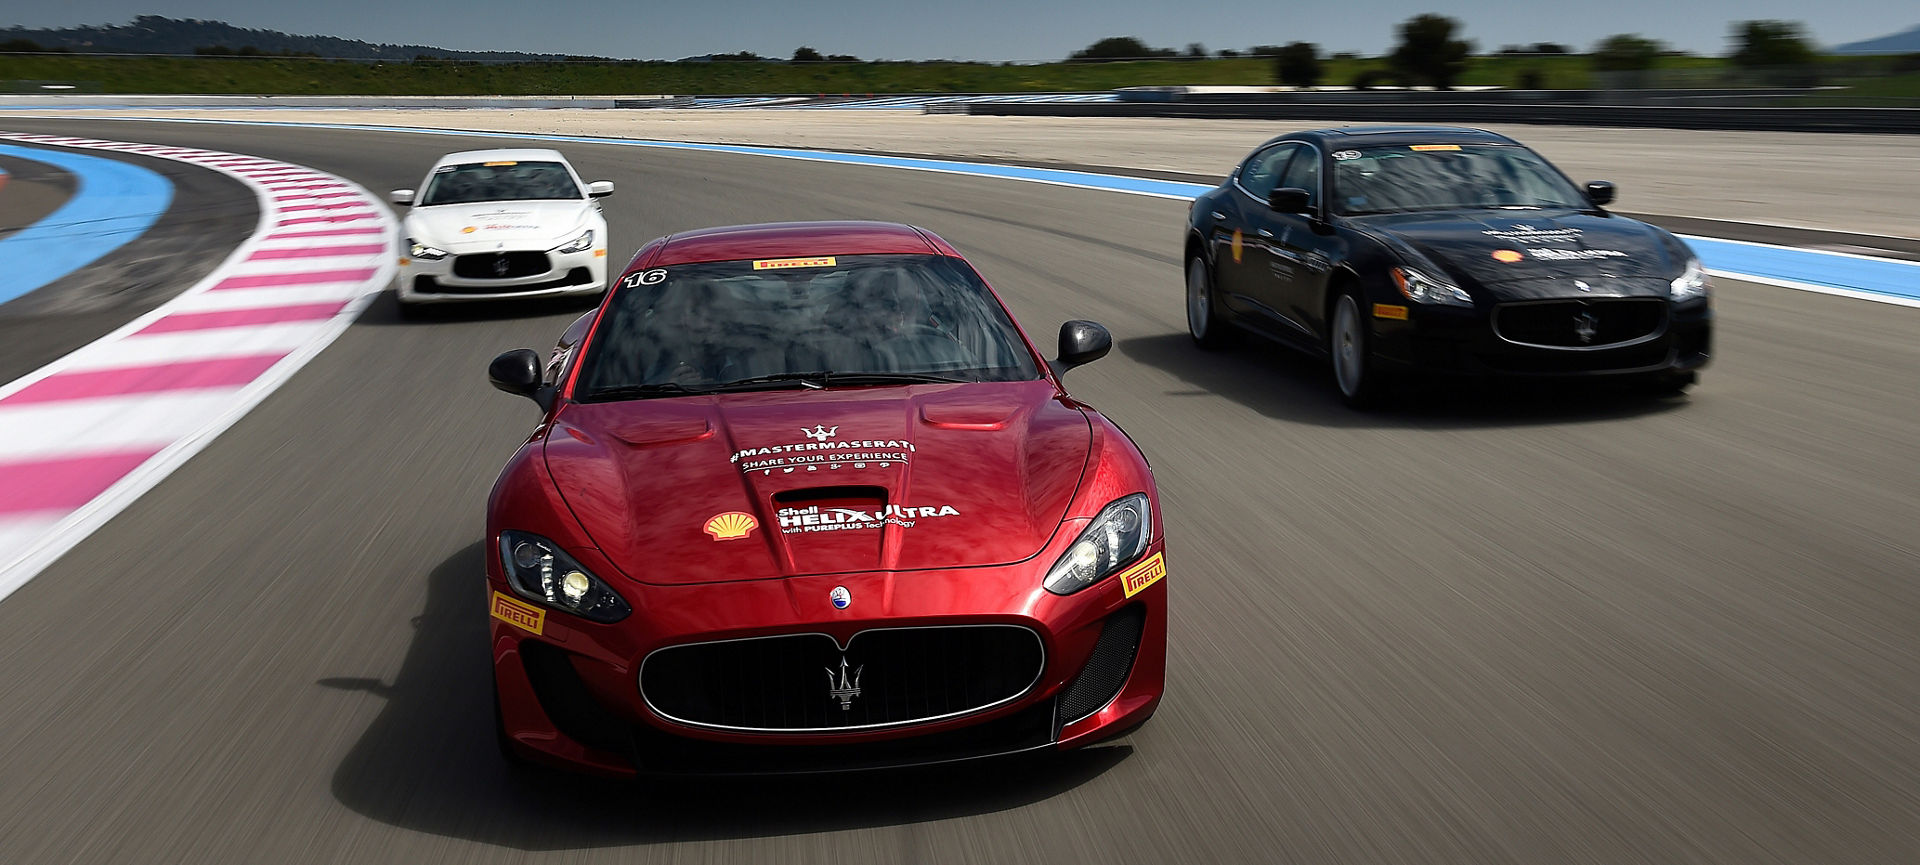 Vehículos Maserati compitiendo en pista